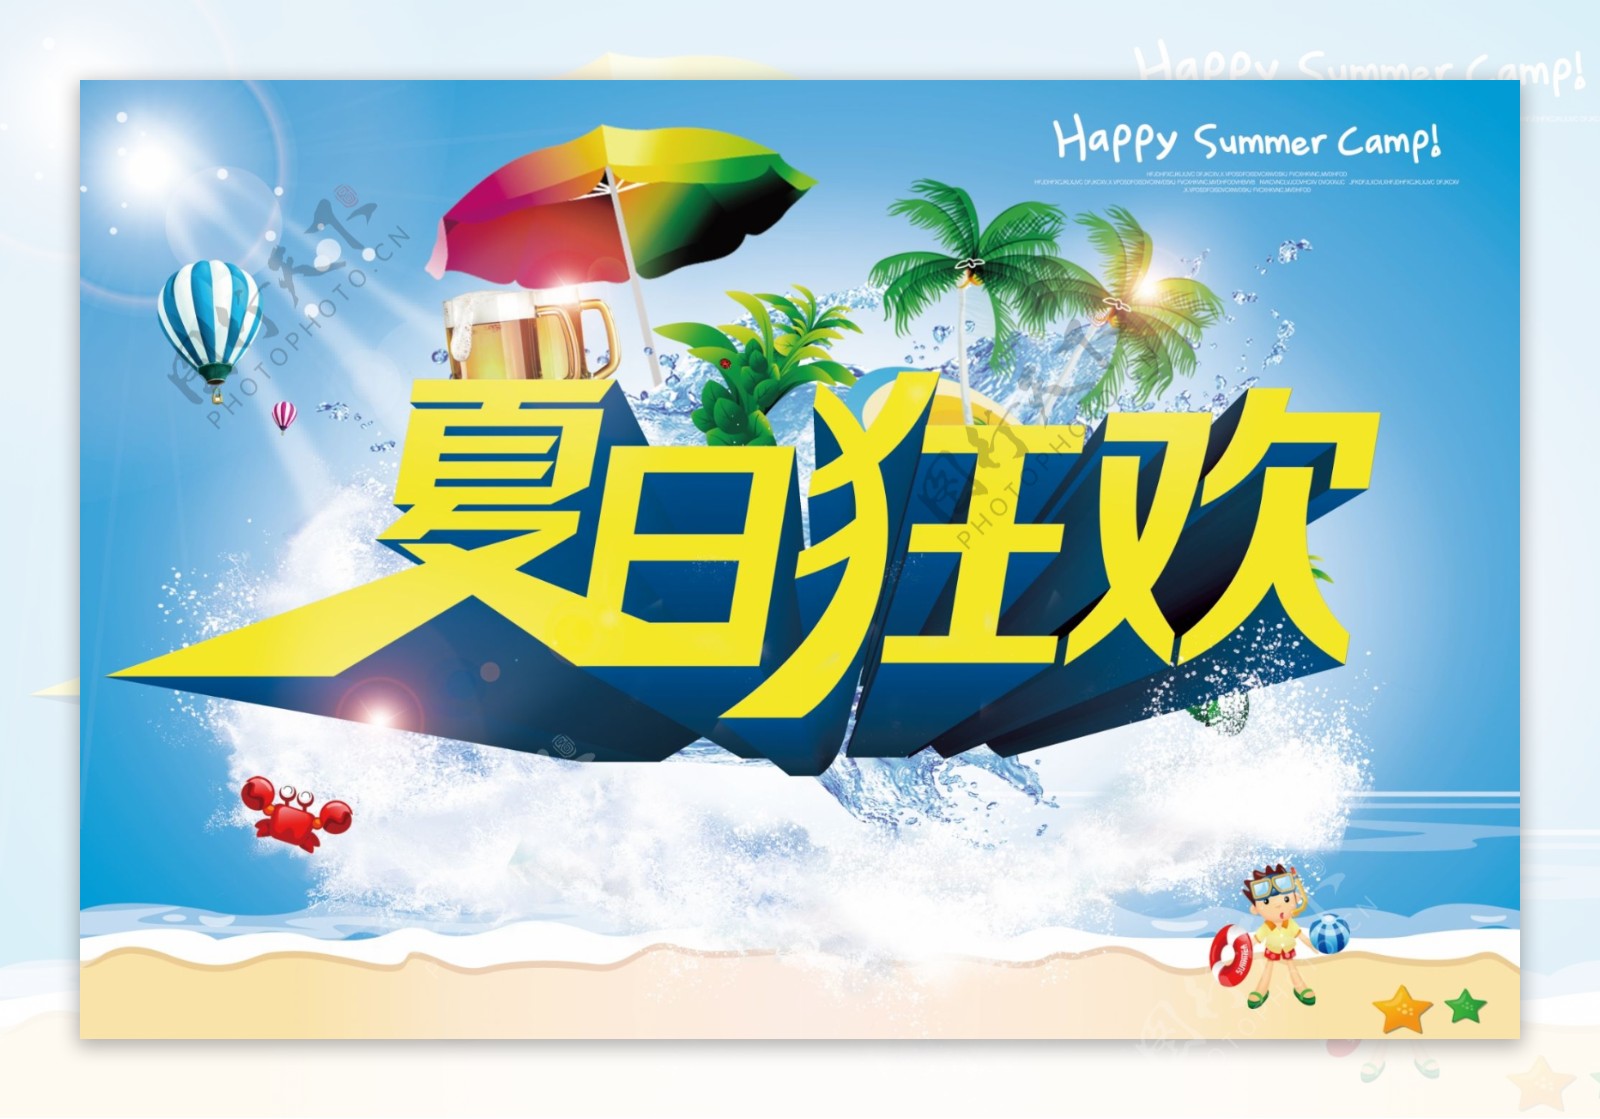 夏日狂欢活动海报背景PSD源文件